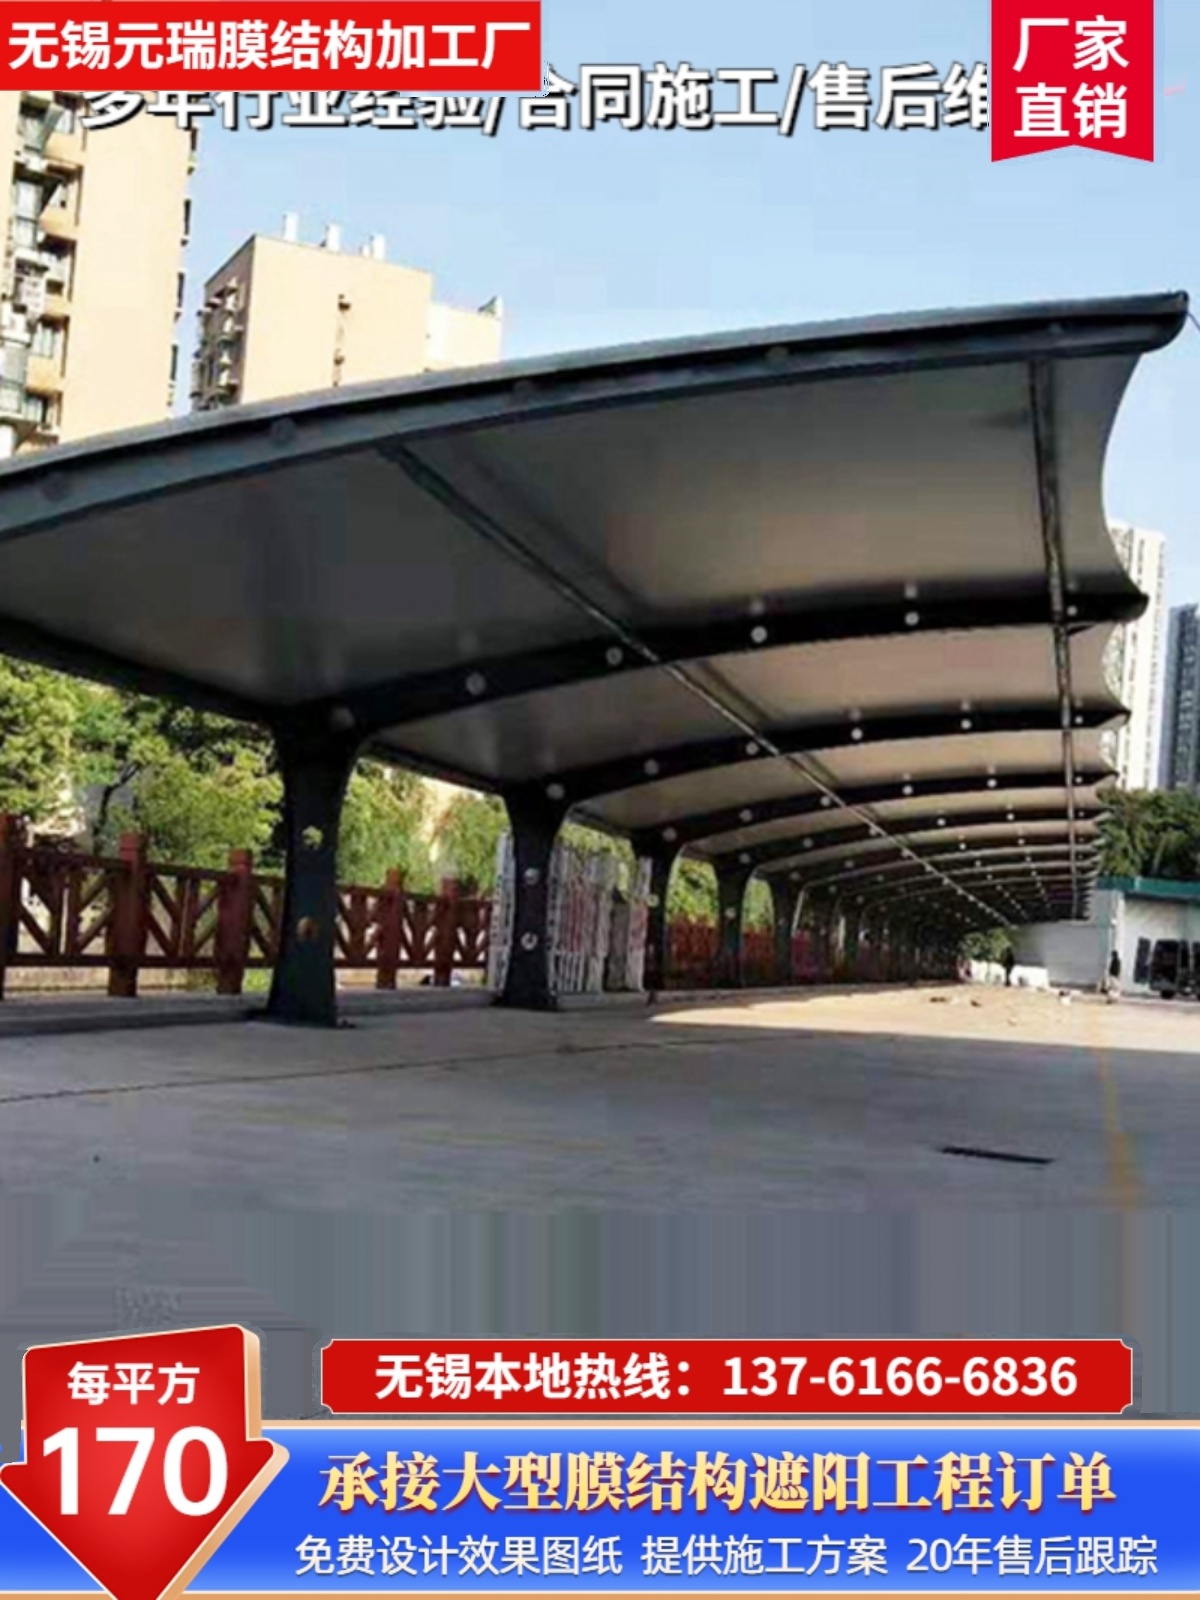 新品小区充电桩汽车篷南京无锡安装户外遮阳蓬膜结构停车篷公交车